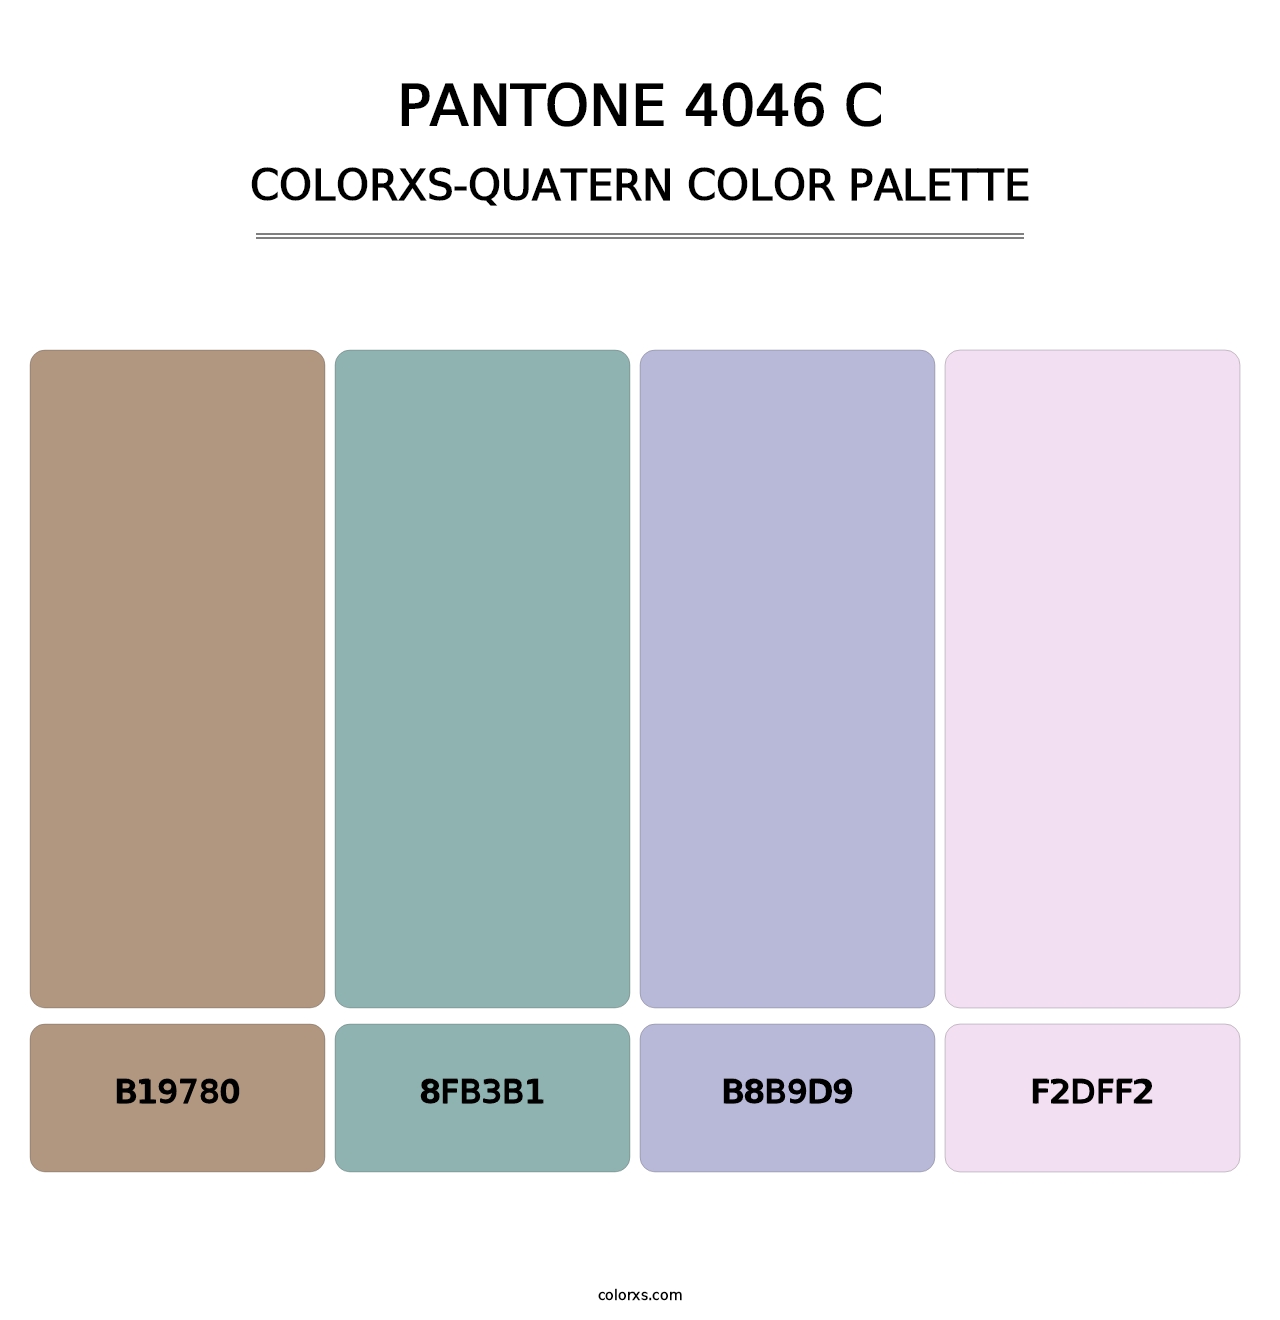 PANTONE 4046 C - Colorxs Quatern Palette